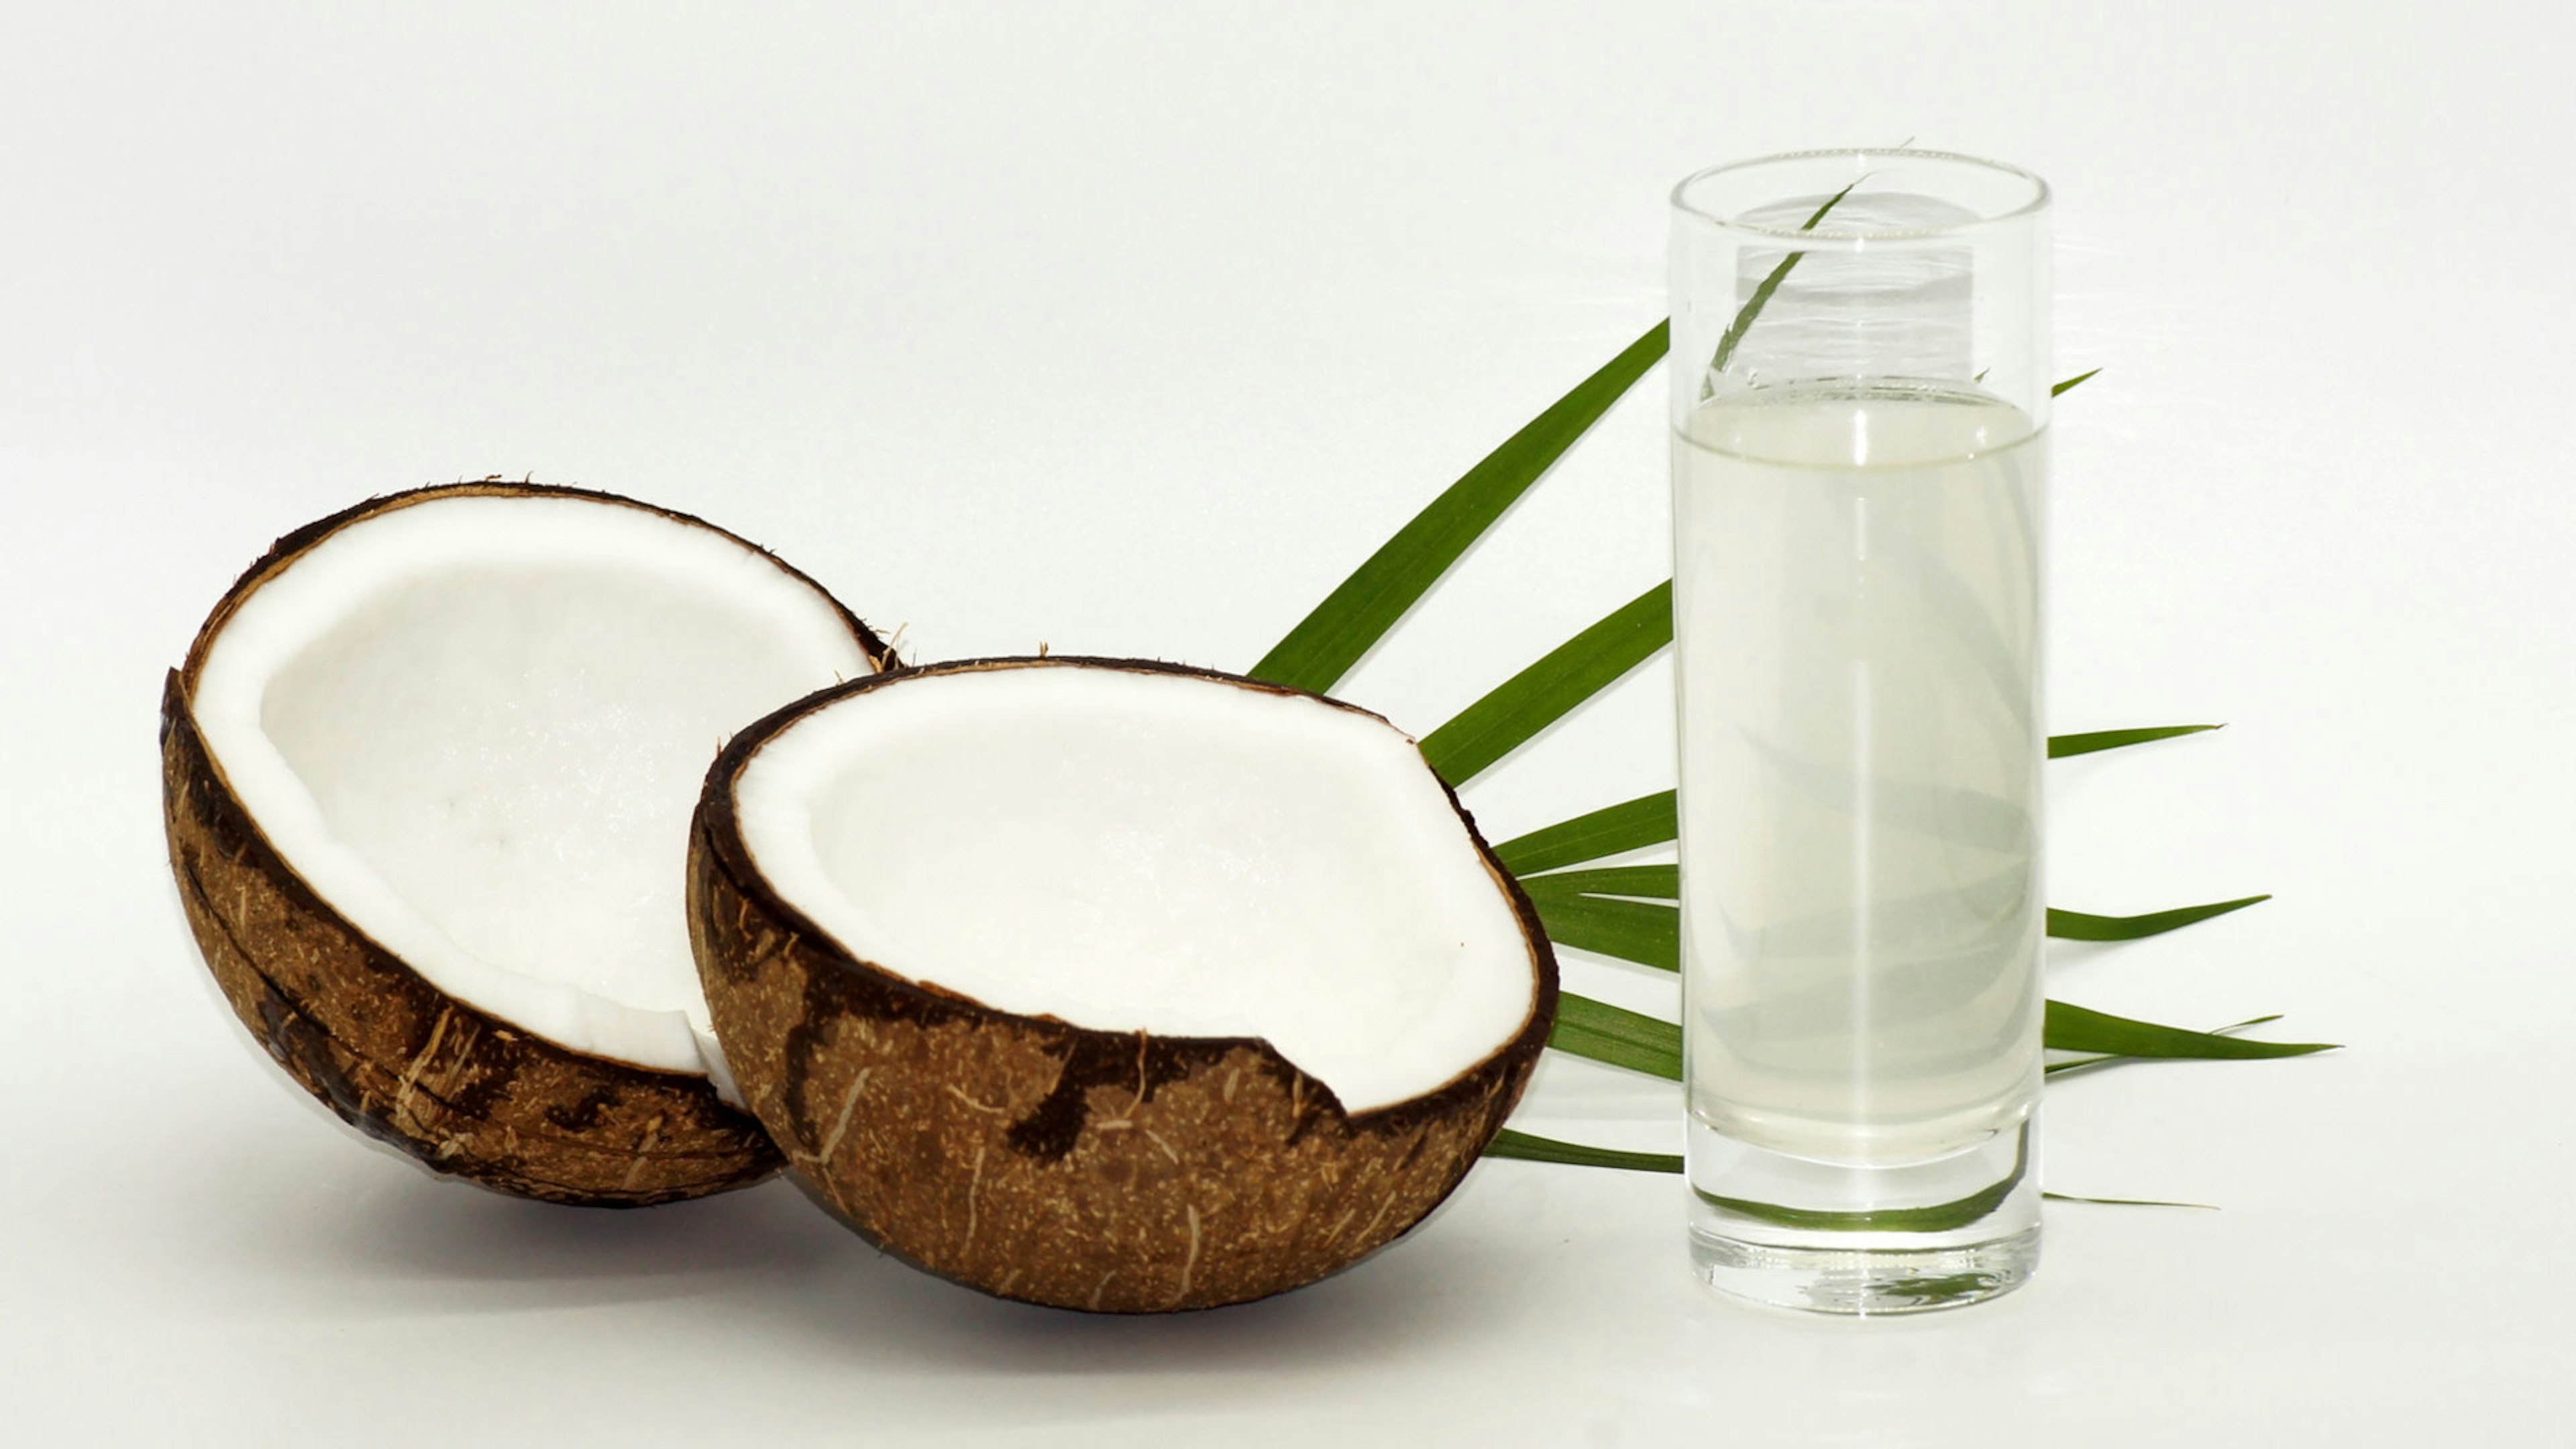 Eine geöffnete Kokosnuss liegt neben einem Glas voller Kokoswasser